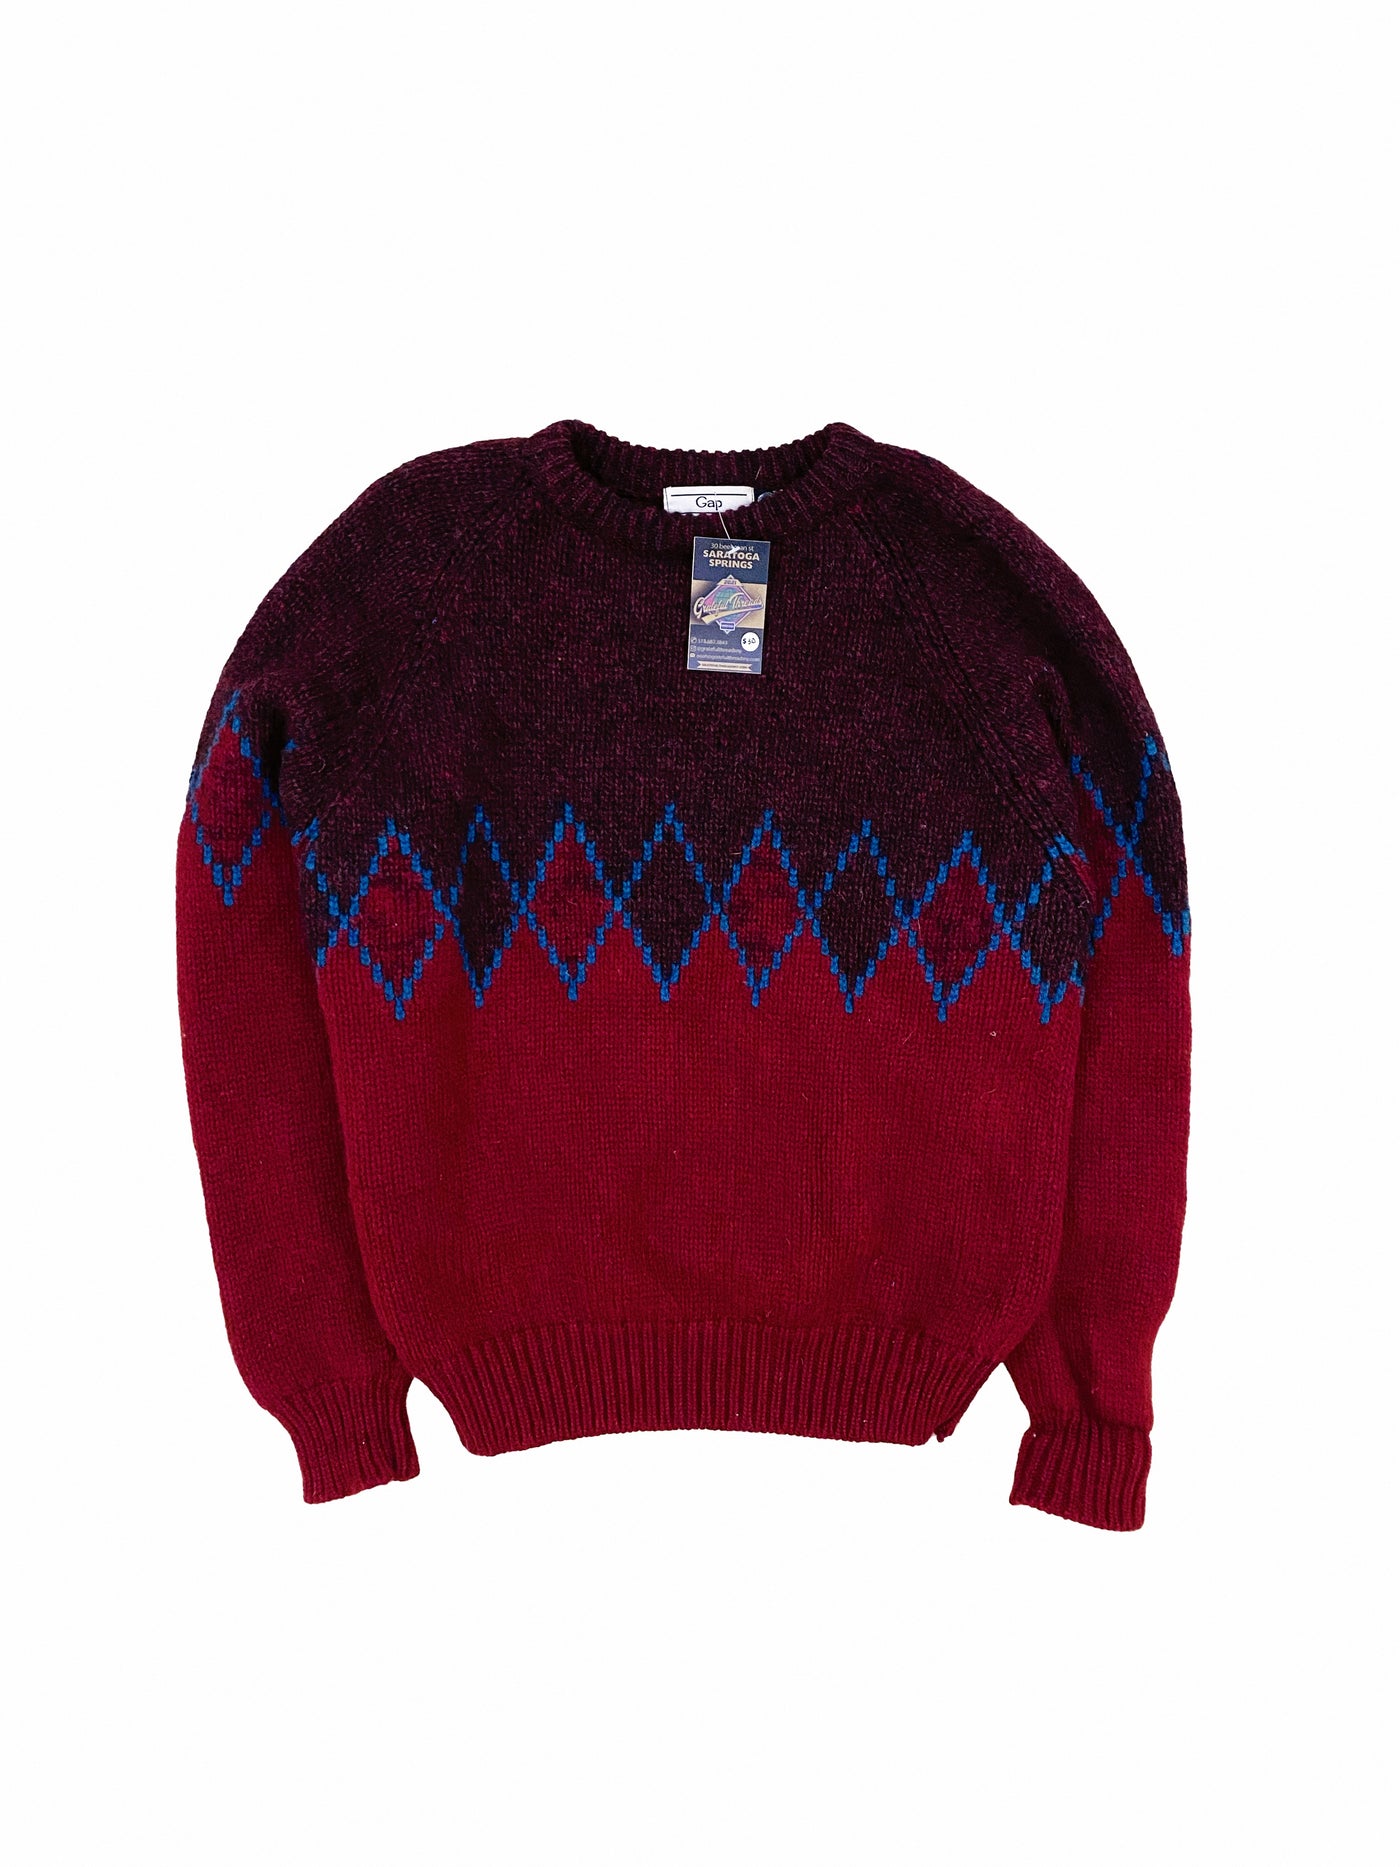 Vintage 80s Gap 100% Wool Knit Sweater